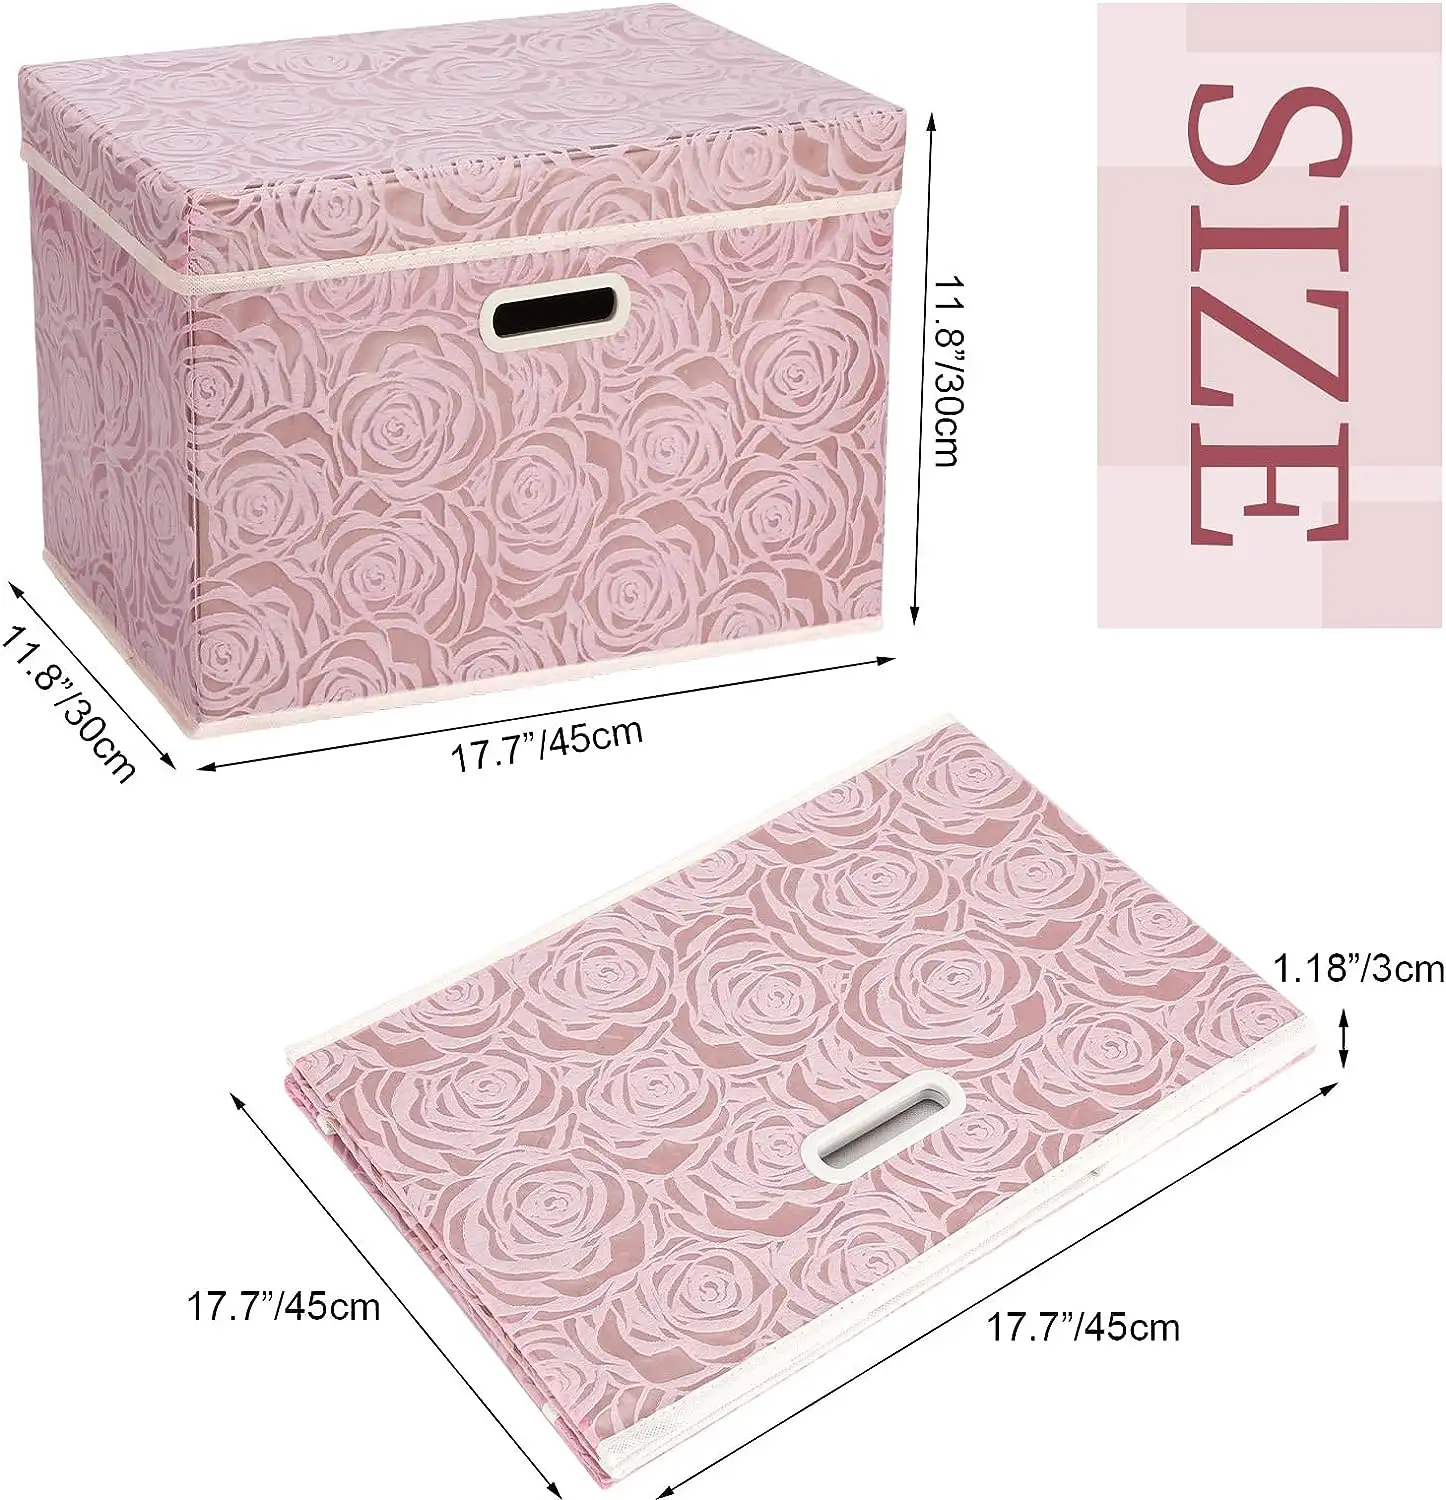 Lids के साथ बड़े बंधनेवाला भंडारण डिब्बे कपड़े भंडारण कंटेनर के लिए घन गुलाबी Foldable सजावटी आयोजक बॉक्स Hom